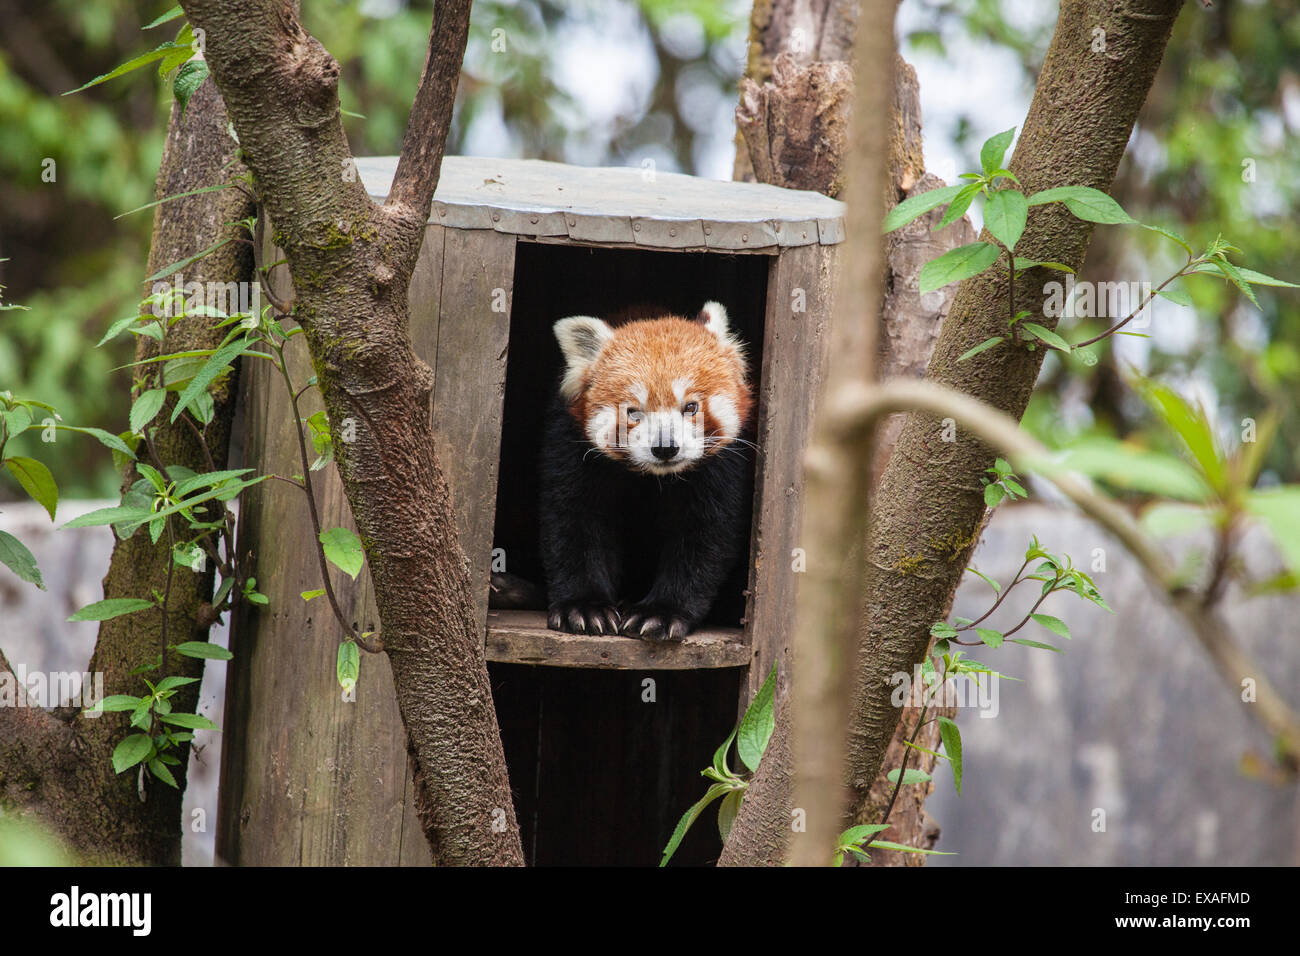 Un panda rosso rimane nascosto nel suo rifugio, costruito da guardie forestali che proteggere questo animale in via di estinzione, Darjeeling, India, Asia Foto Stock